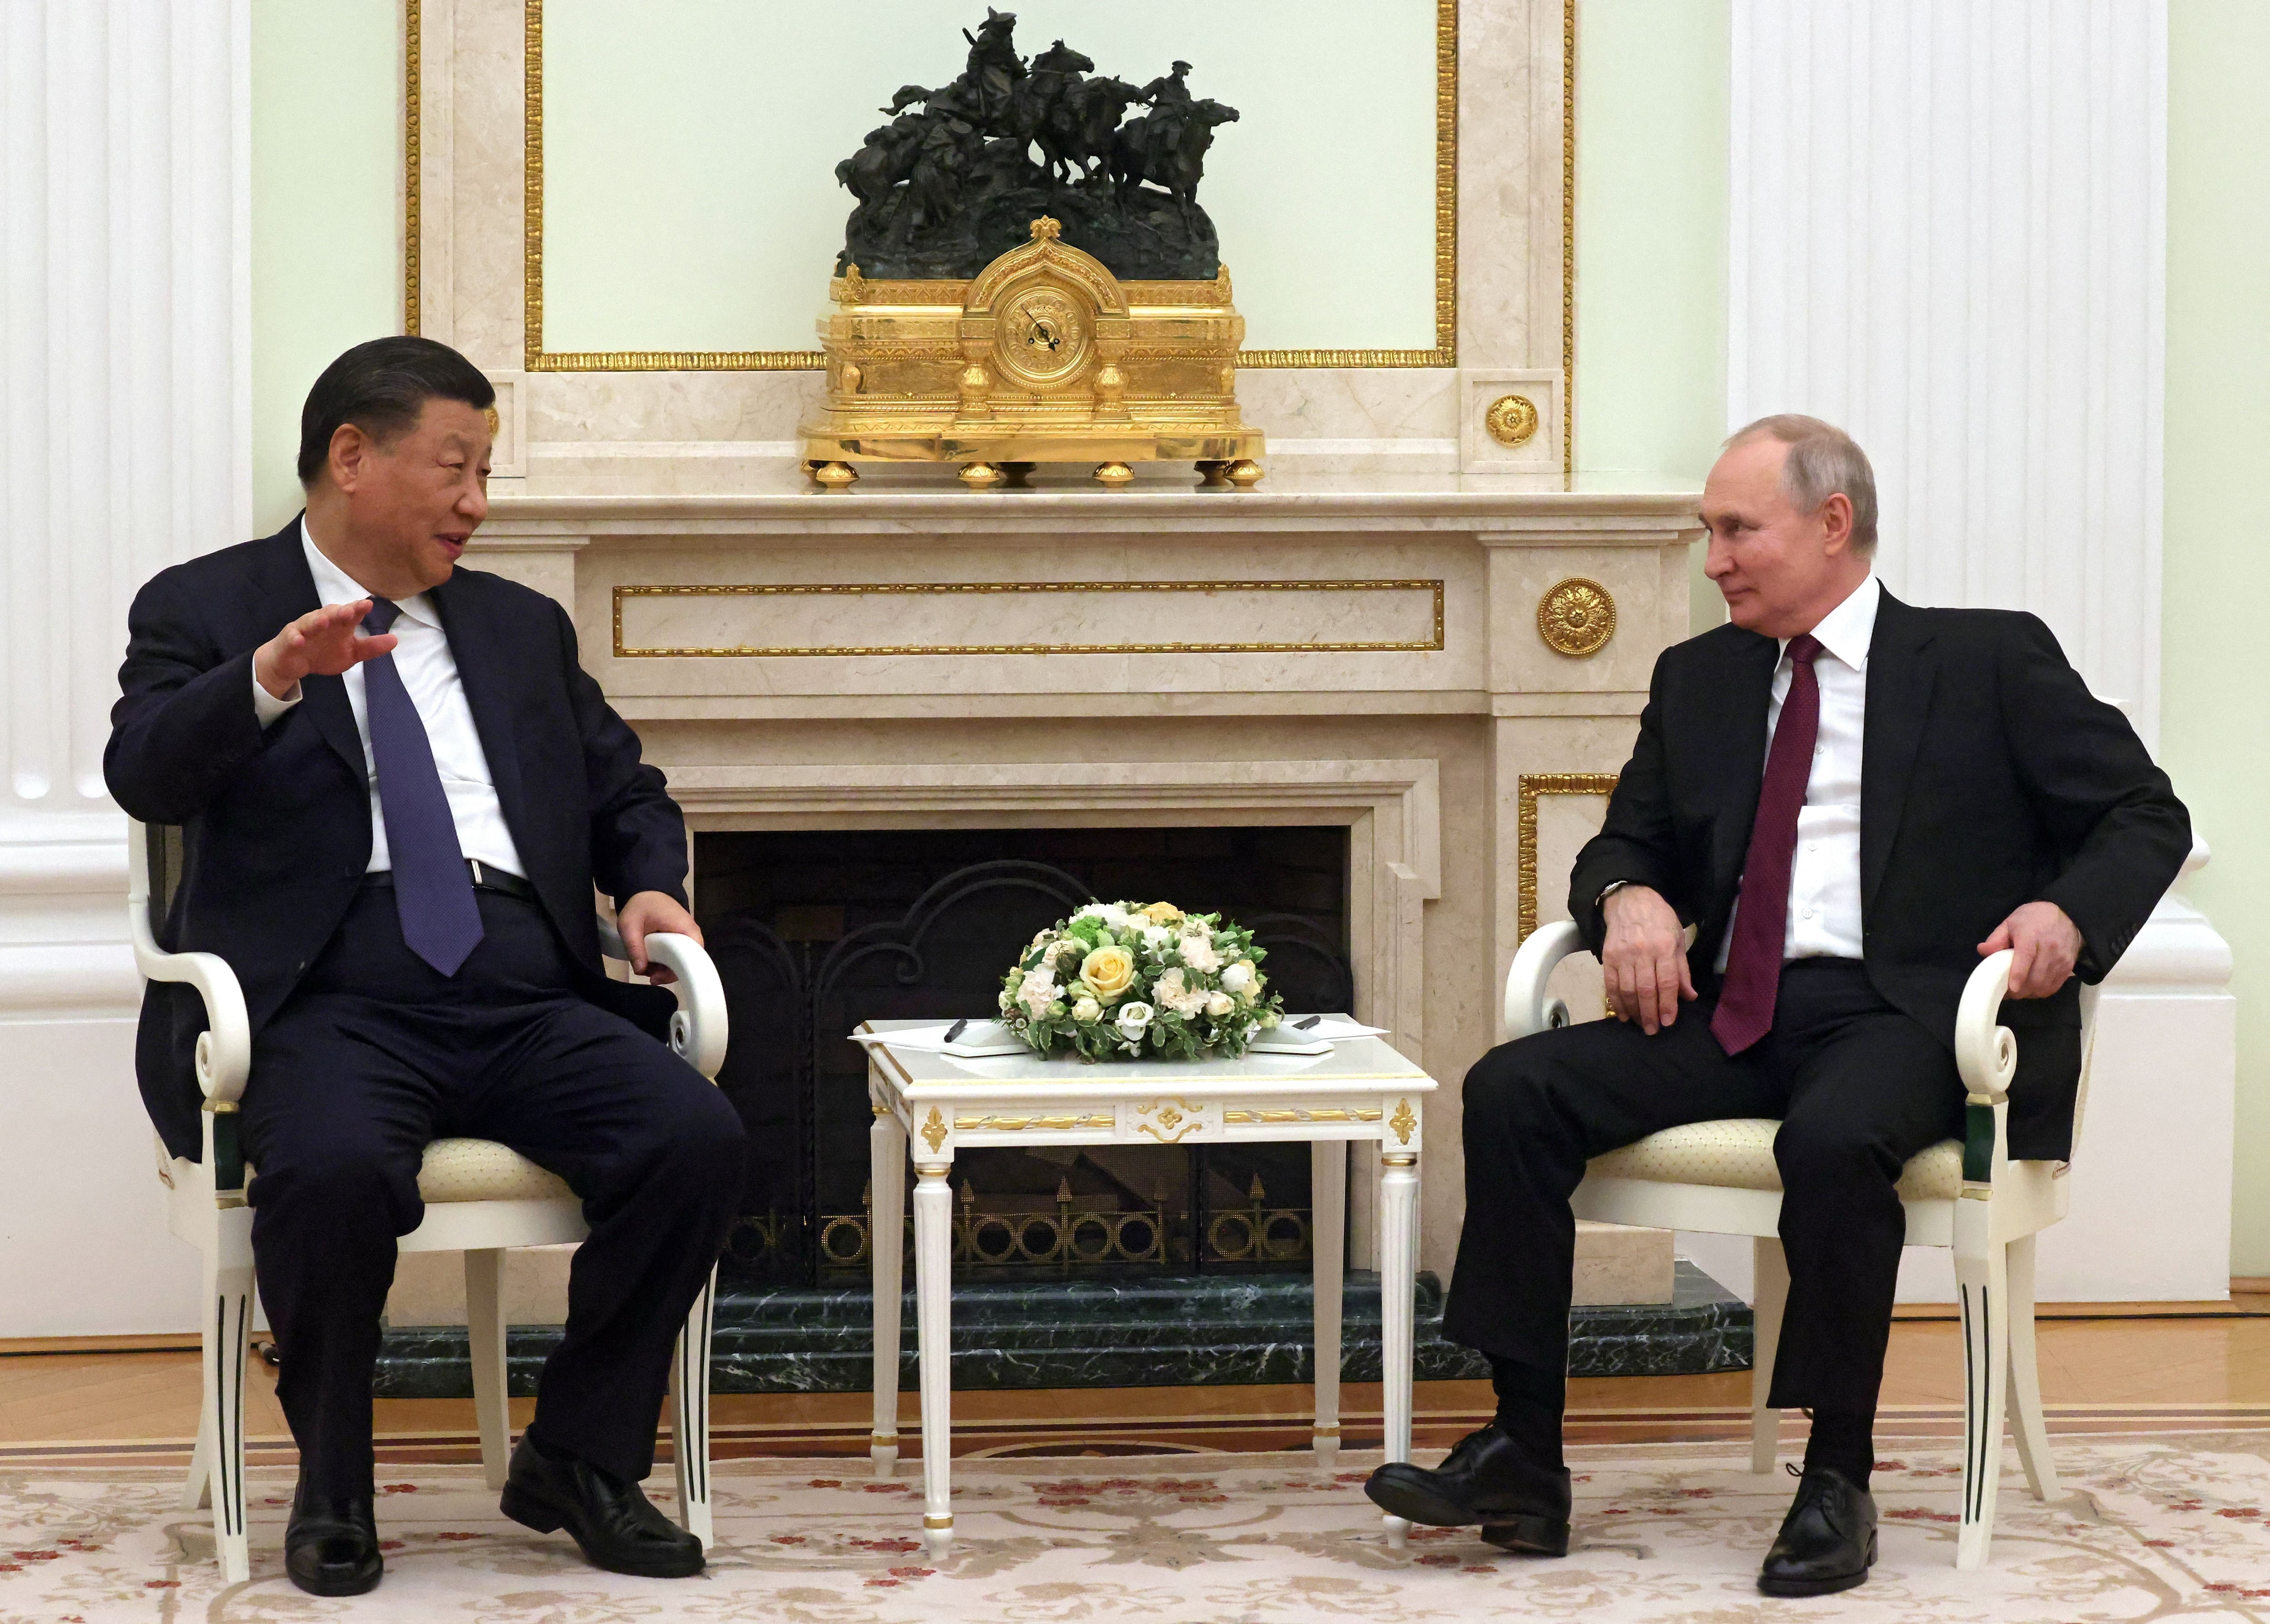 El presidente ruso, Vladímir Putin, y el presidente chino, Xi Jinping, asisten a una reunión en el Kremlin en Moscú, Rusia, 20 de marzo de 2023. Sputnik/Sergei Karpukhin/Pool vía REUTERS